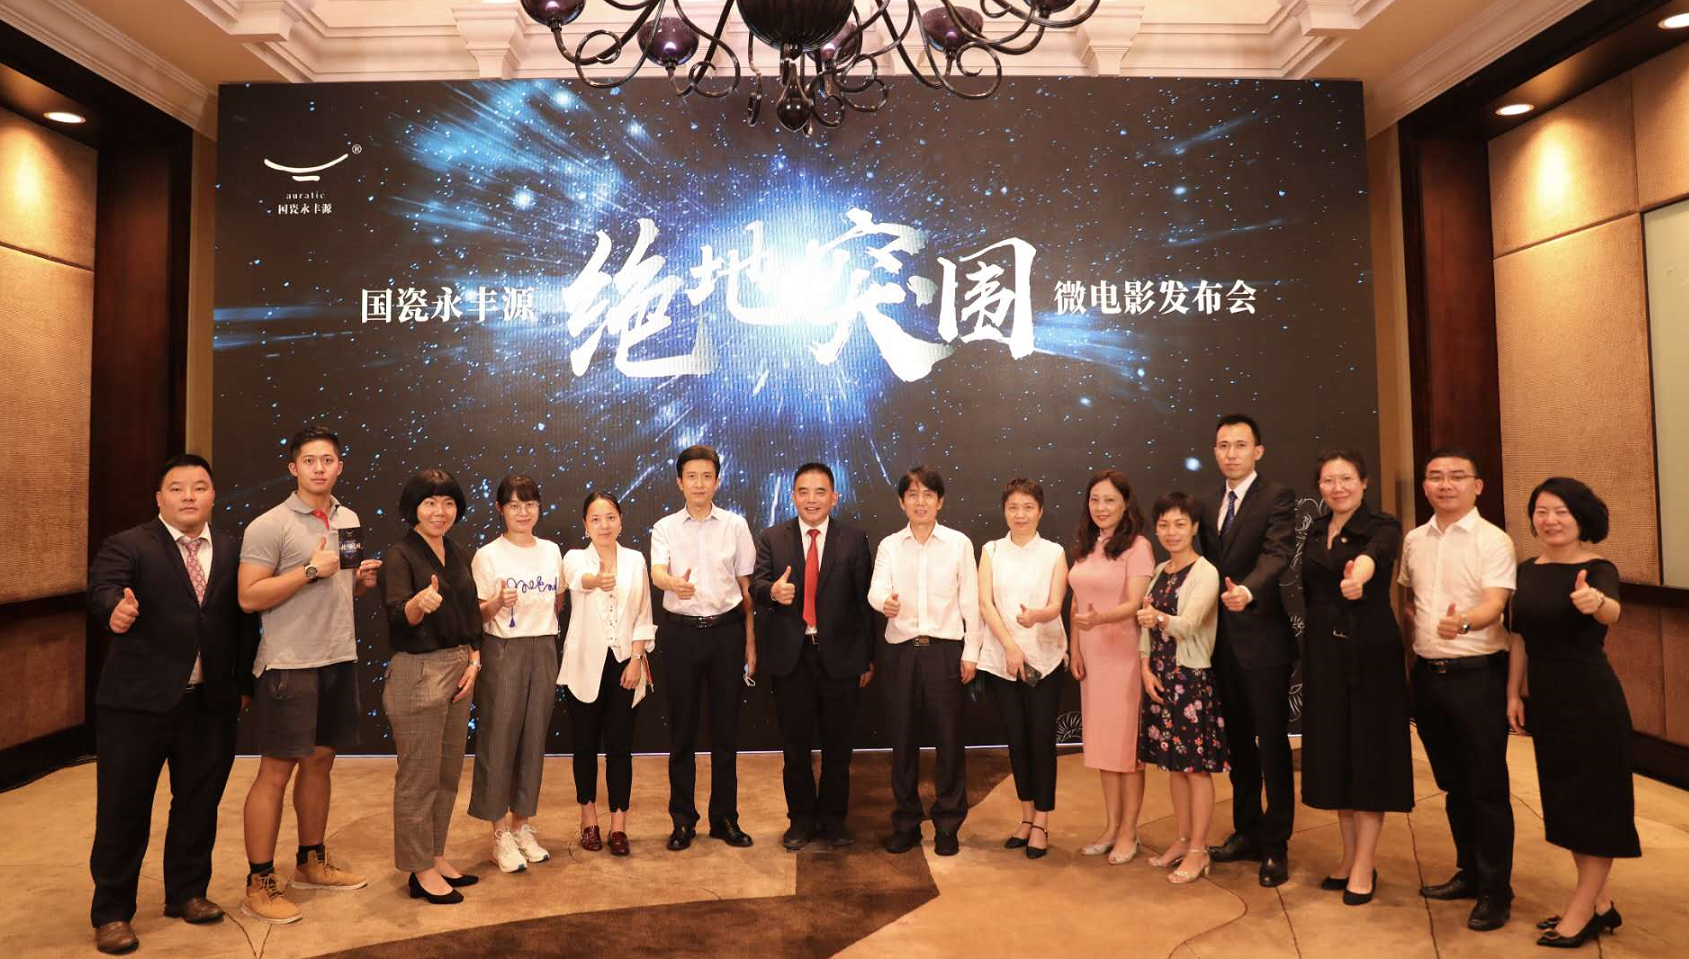 微电影《绝地突围》发布会3日在深圳举行